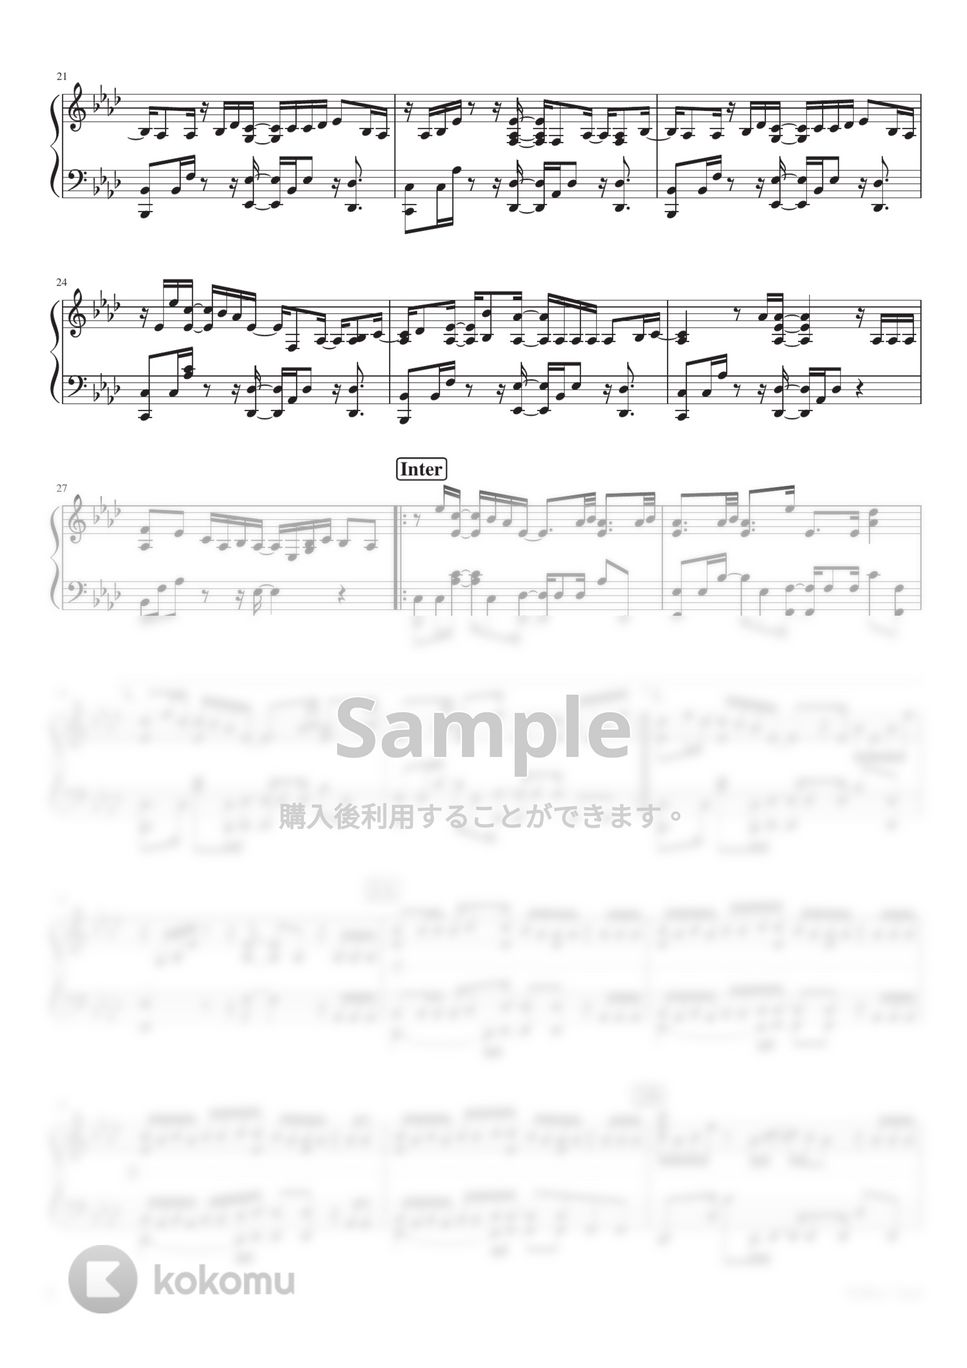 Eve - YOKU (Piano Solo) by 深根 / Fukane